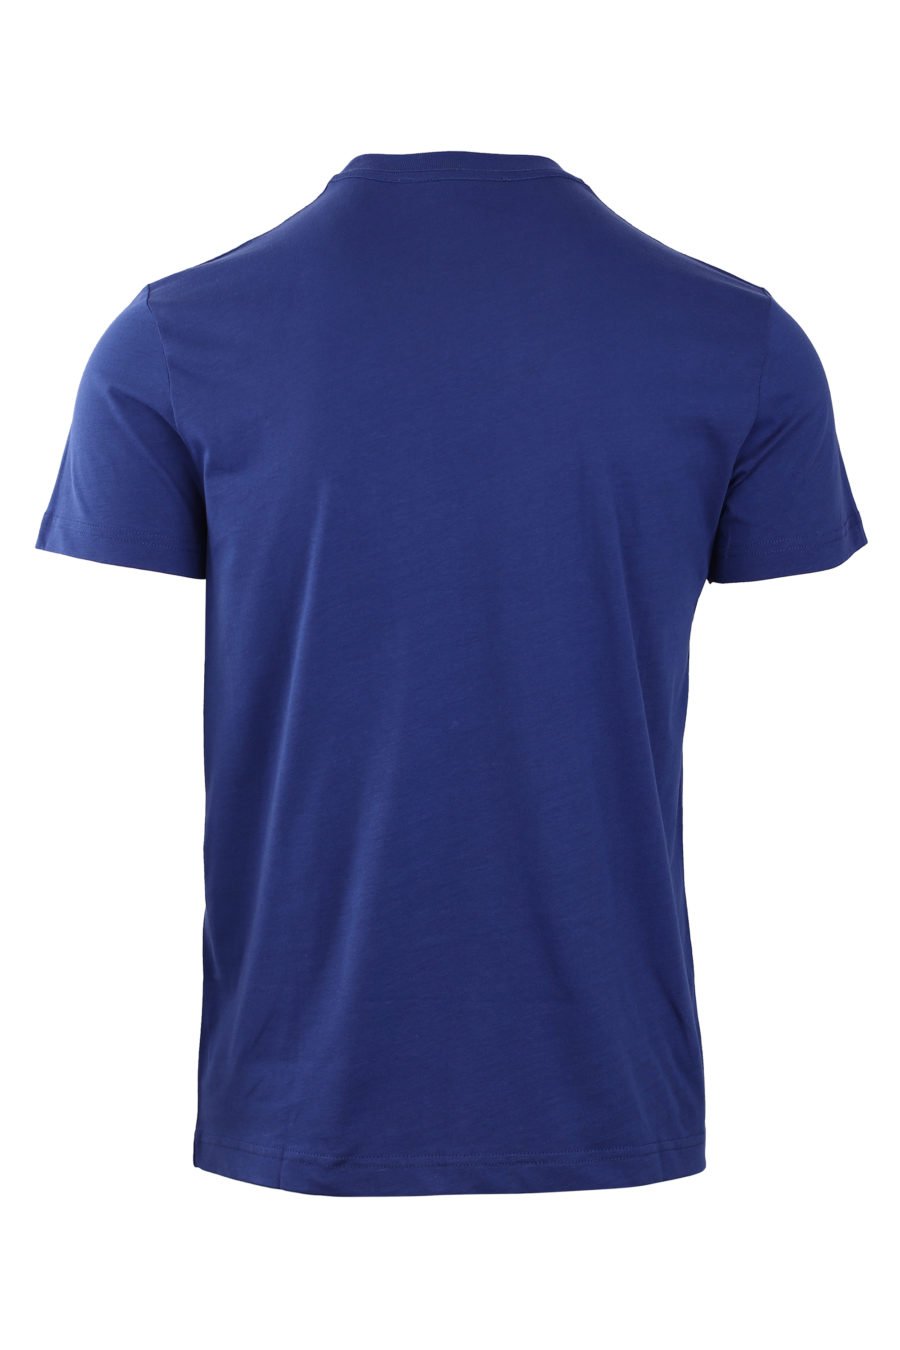 T-shirt azul-marinho com pequeno logótipo redondo - IMG 0773